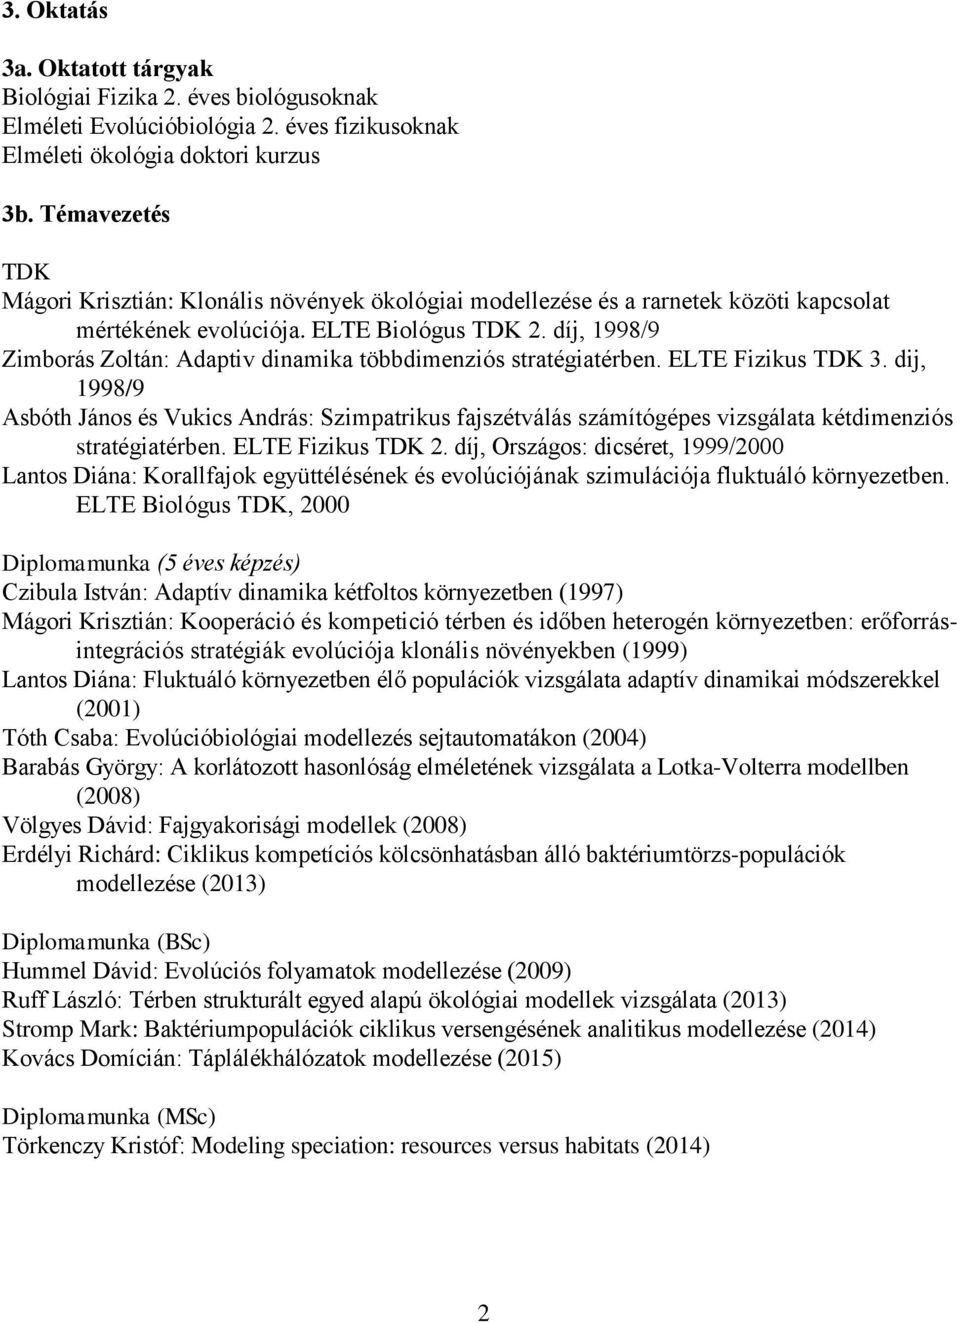 díj, 1998/9 Zimborás Zoltán: Adaptiv dinamika többdimenziós stratégiatérben. ELTE Fizikus TDK 3.